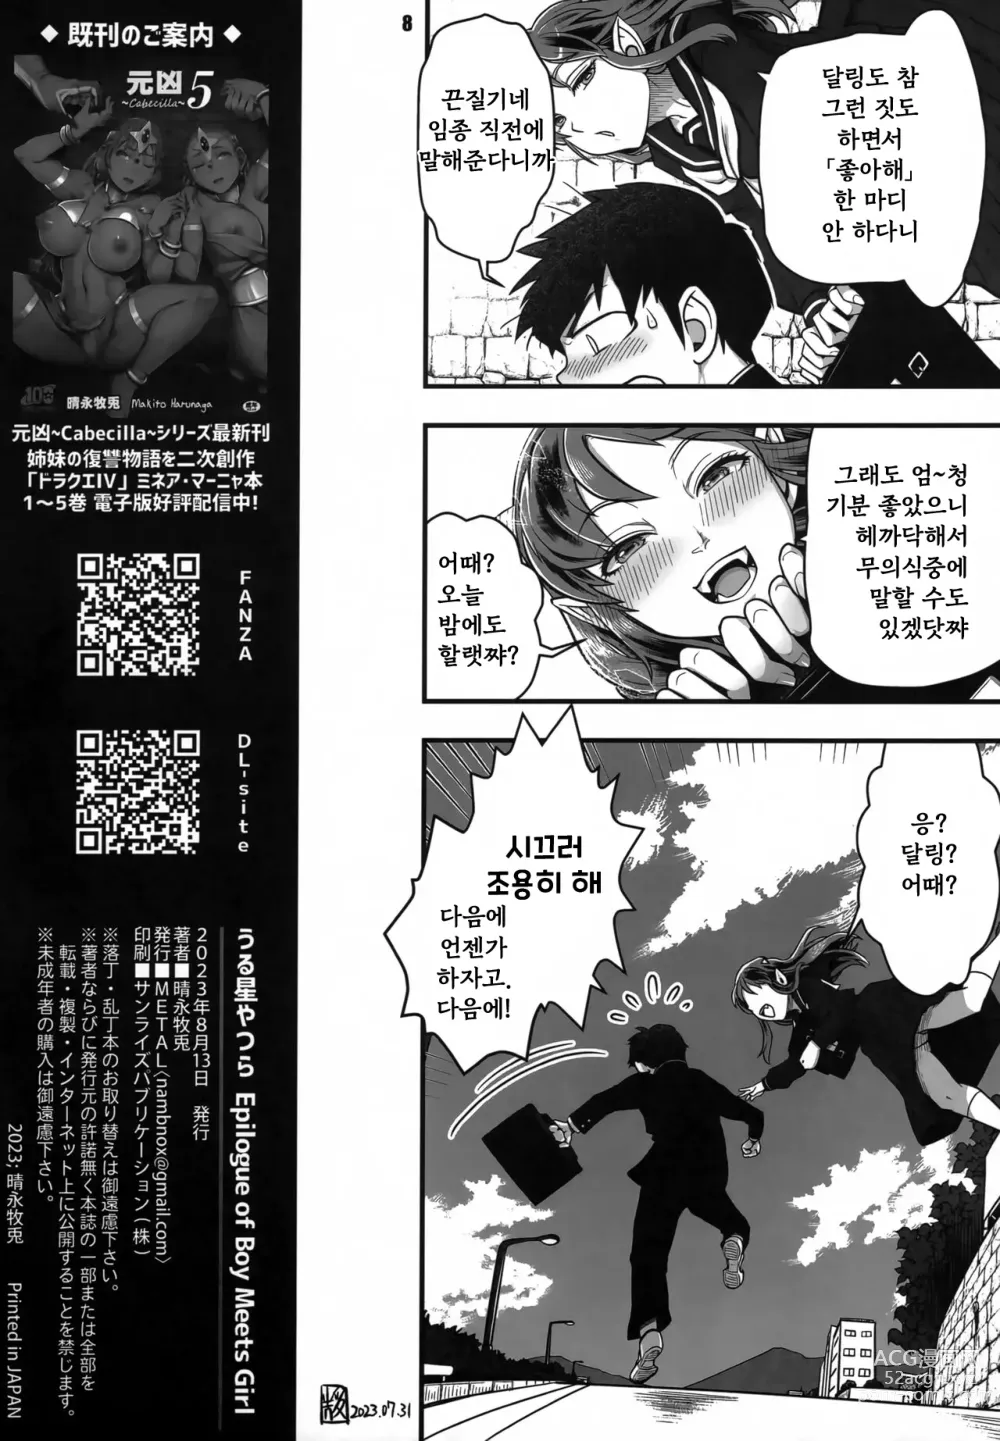 Page 8 of doujinshi Urusei Yatsura Epilogue of Boy meets Girl